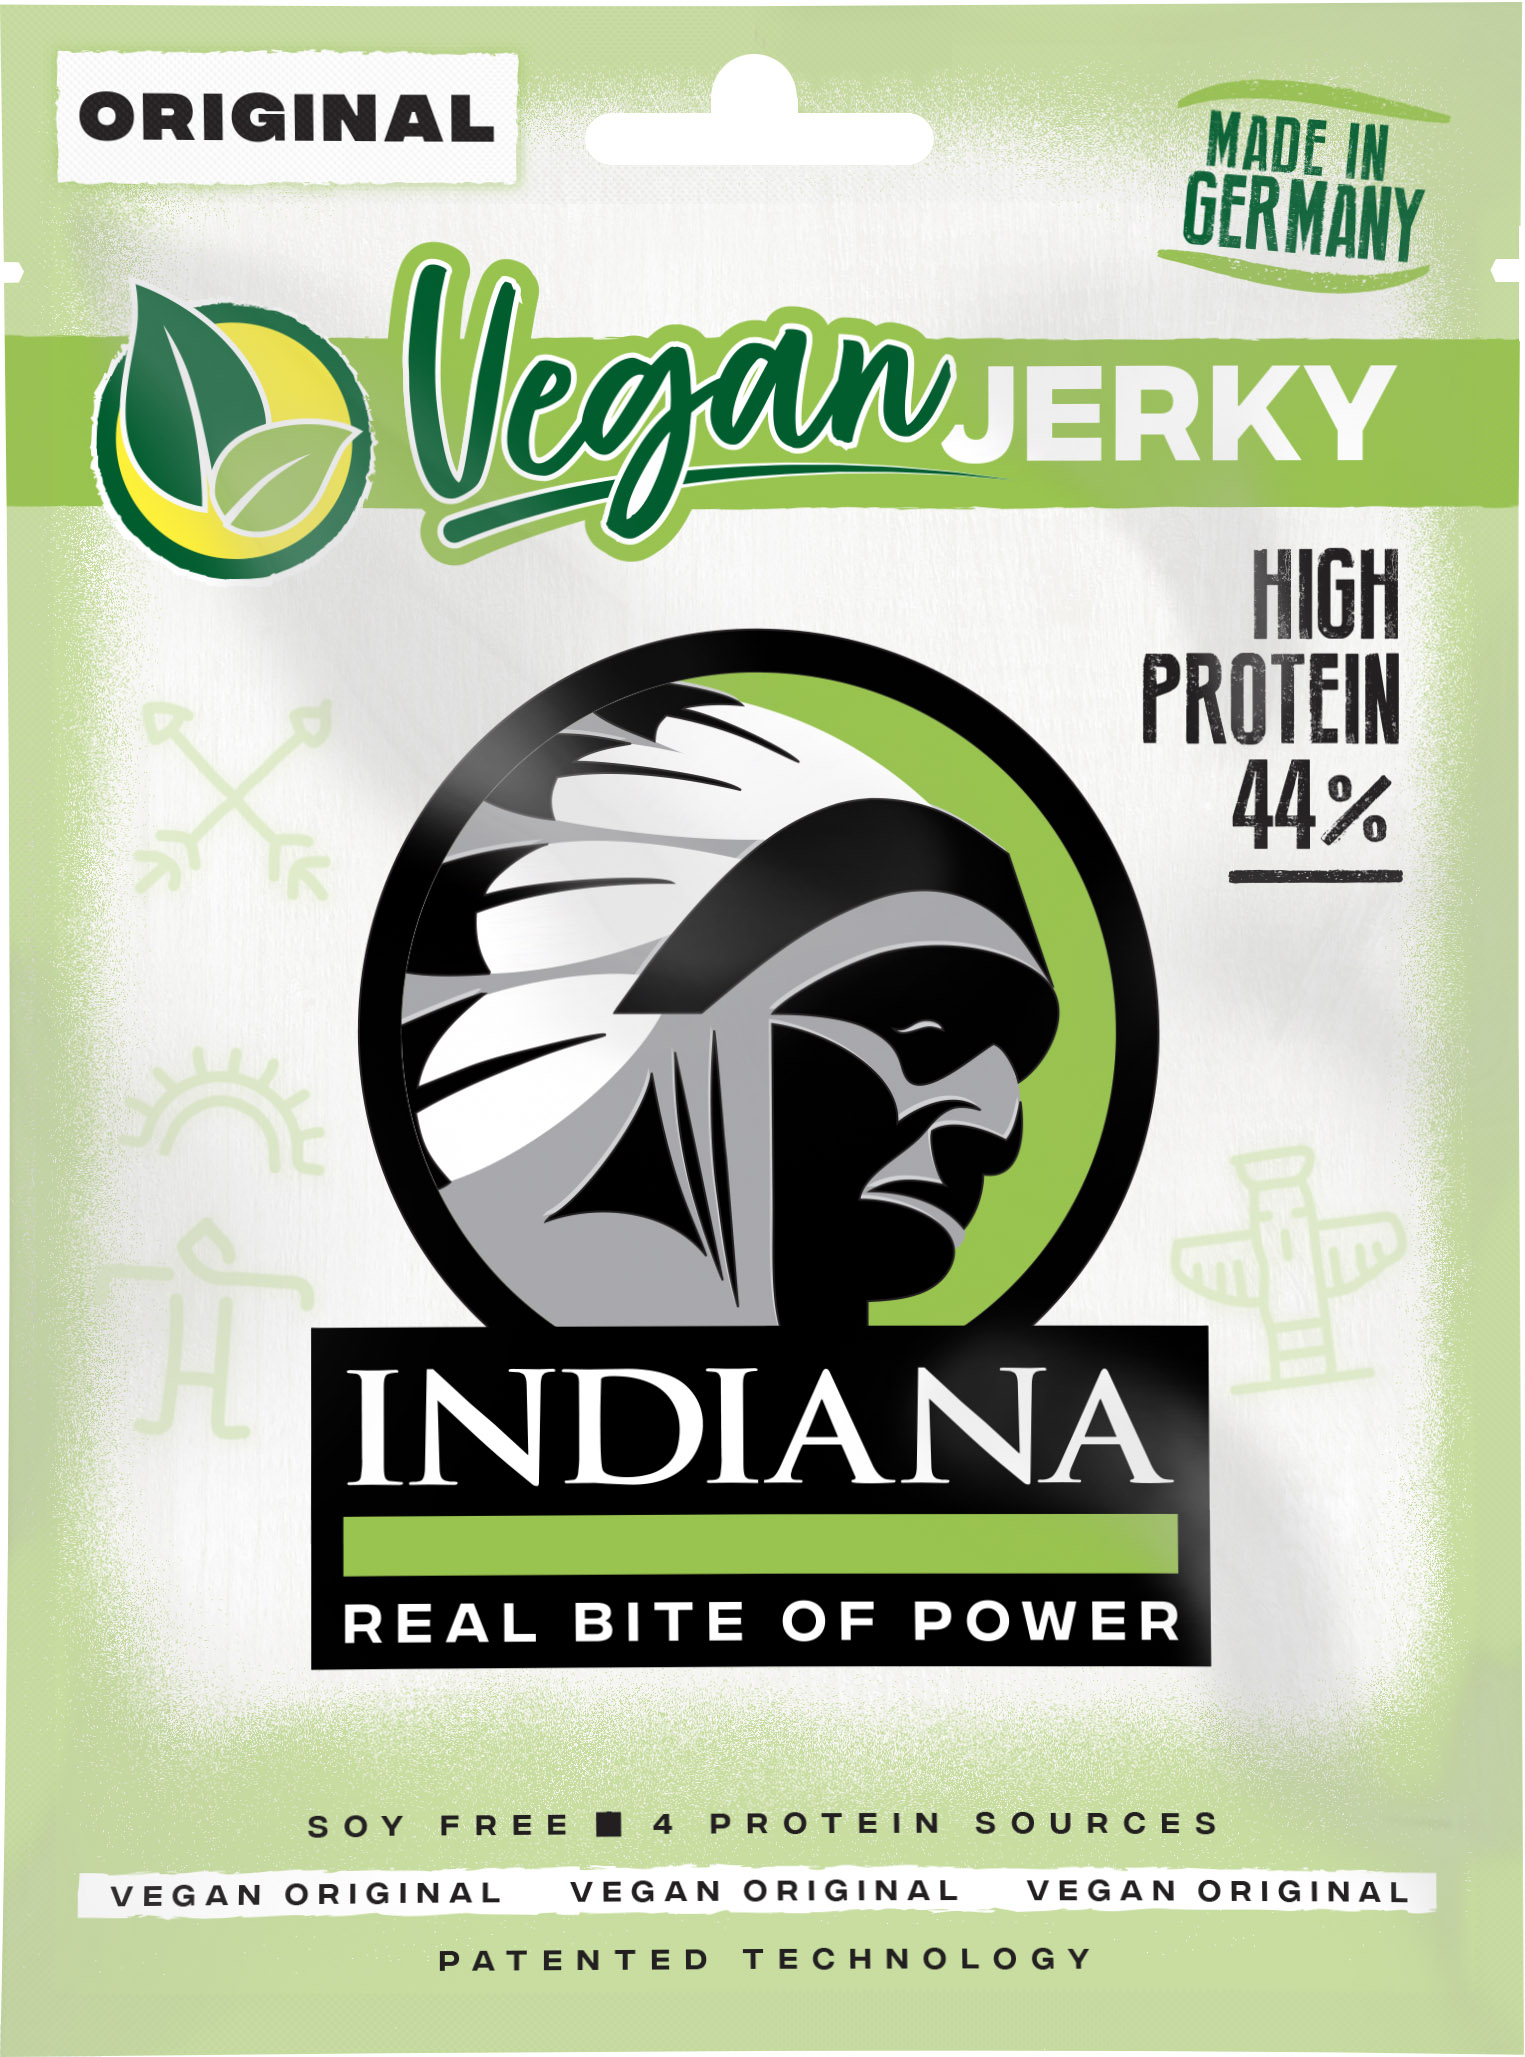 Iindiana Indiana Vegan Jerky Original 25g